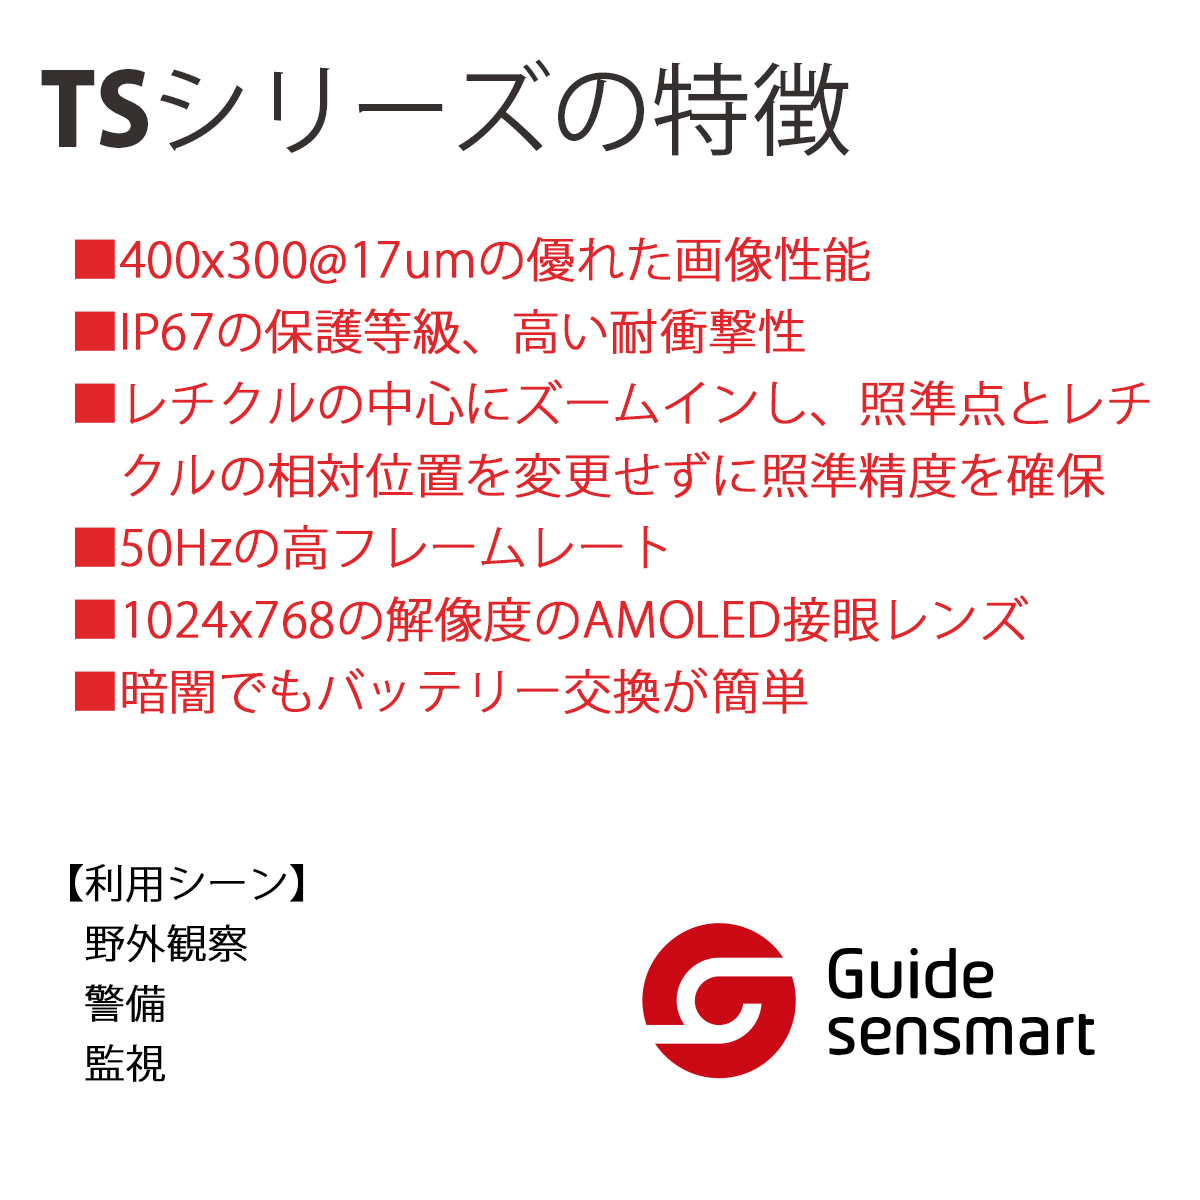 Guide Sensmart 熱検出器 防水 Ts450 サーマルライフルスコープ サーマル メーカー正規品 Tsシリーズ